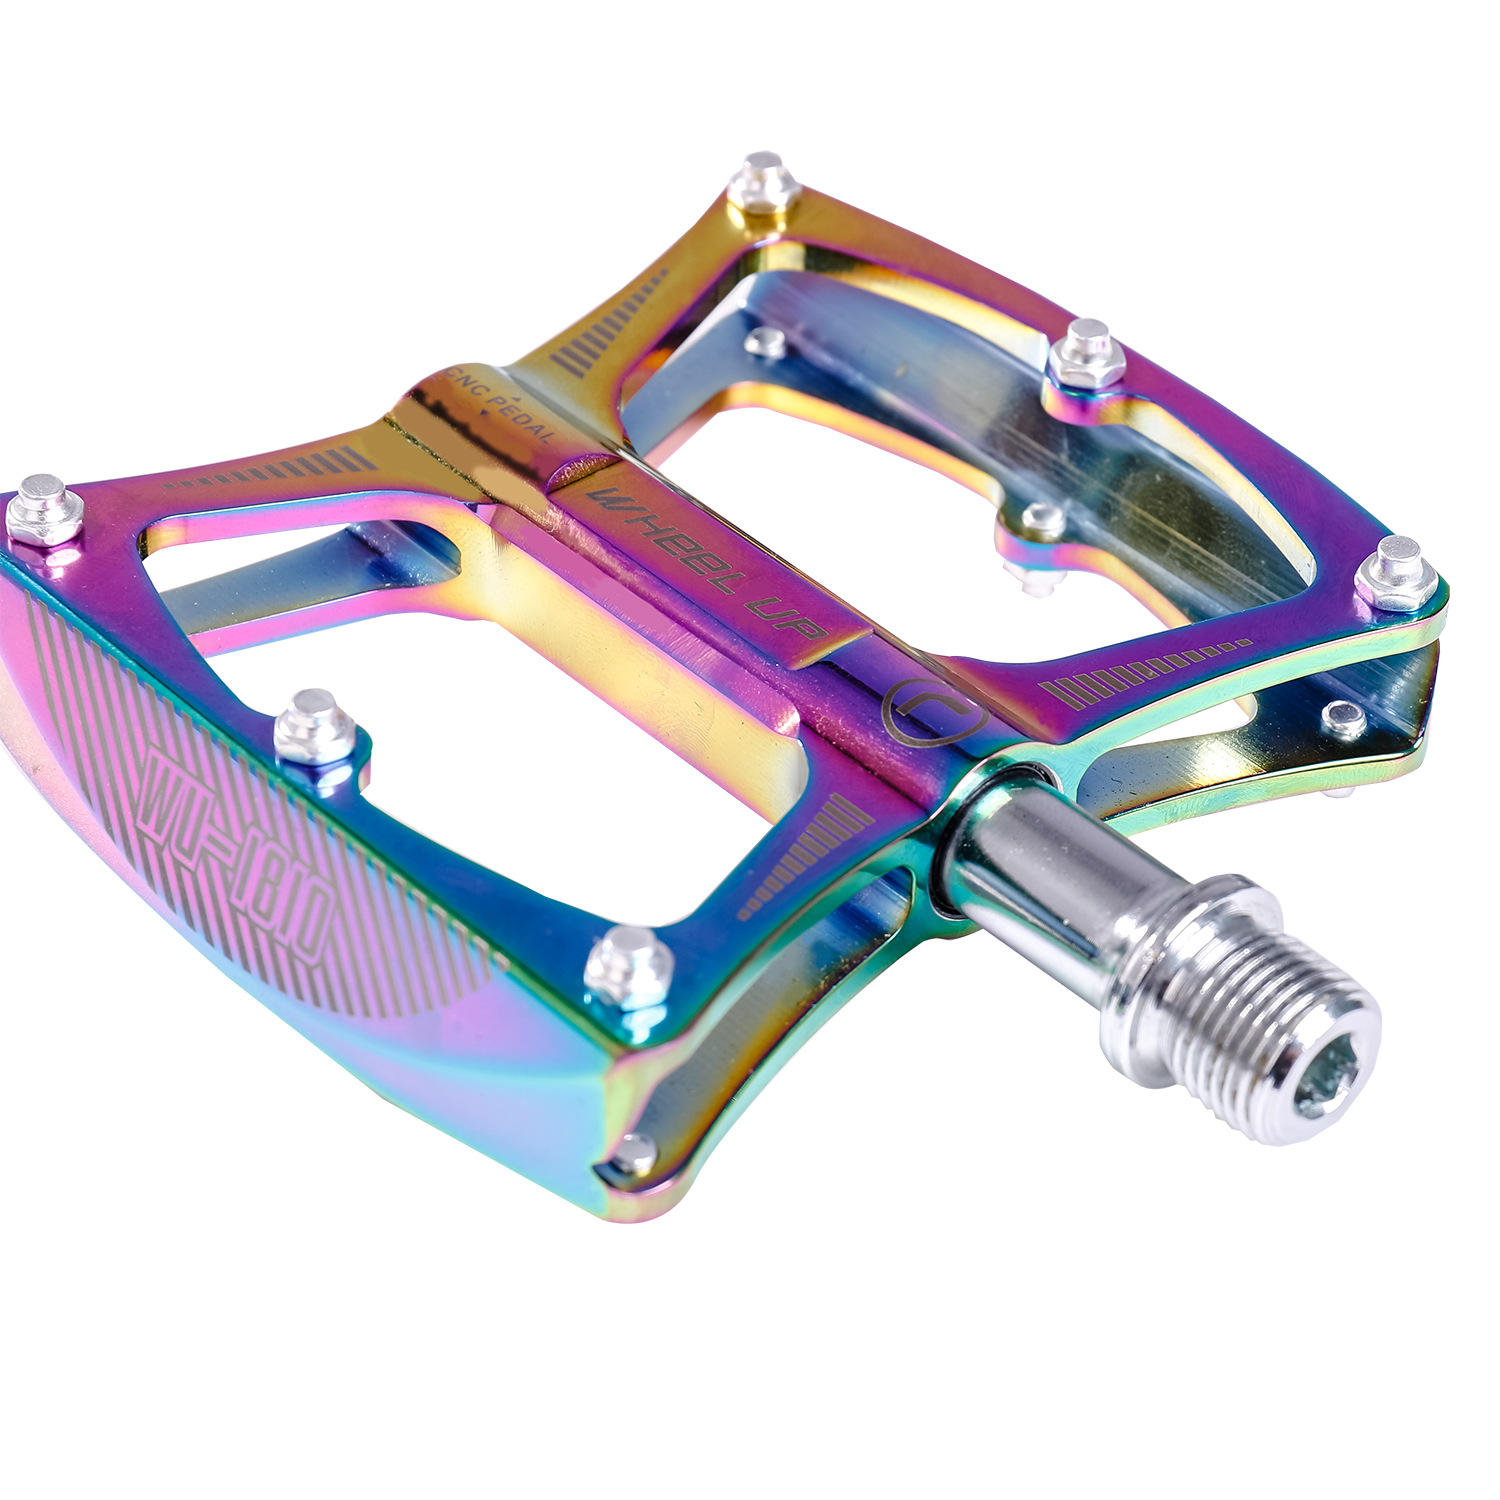 WHEEL UP LXK340-02 Colorful Cojinetes de aleación de aluminio Pedales antideslizantes para bicicletas al aire libre Peda